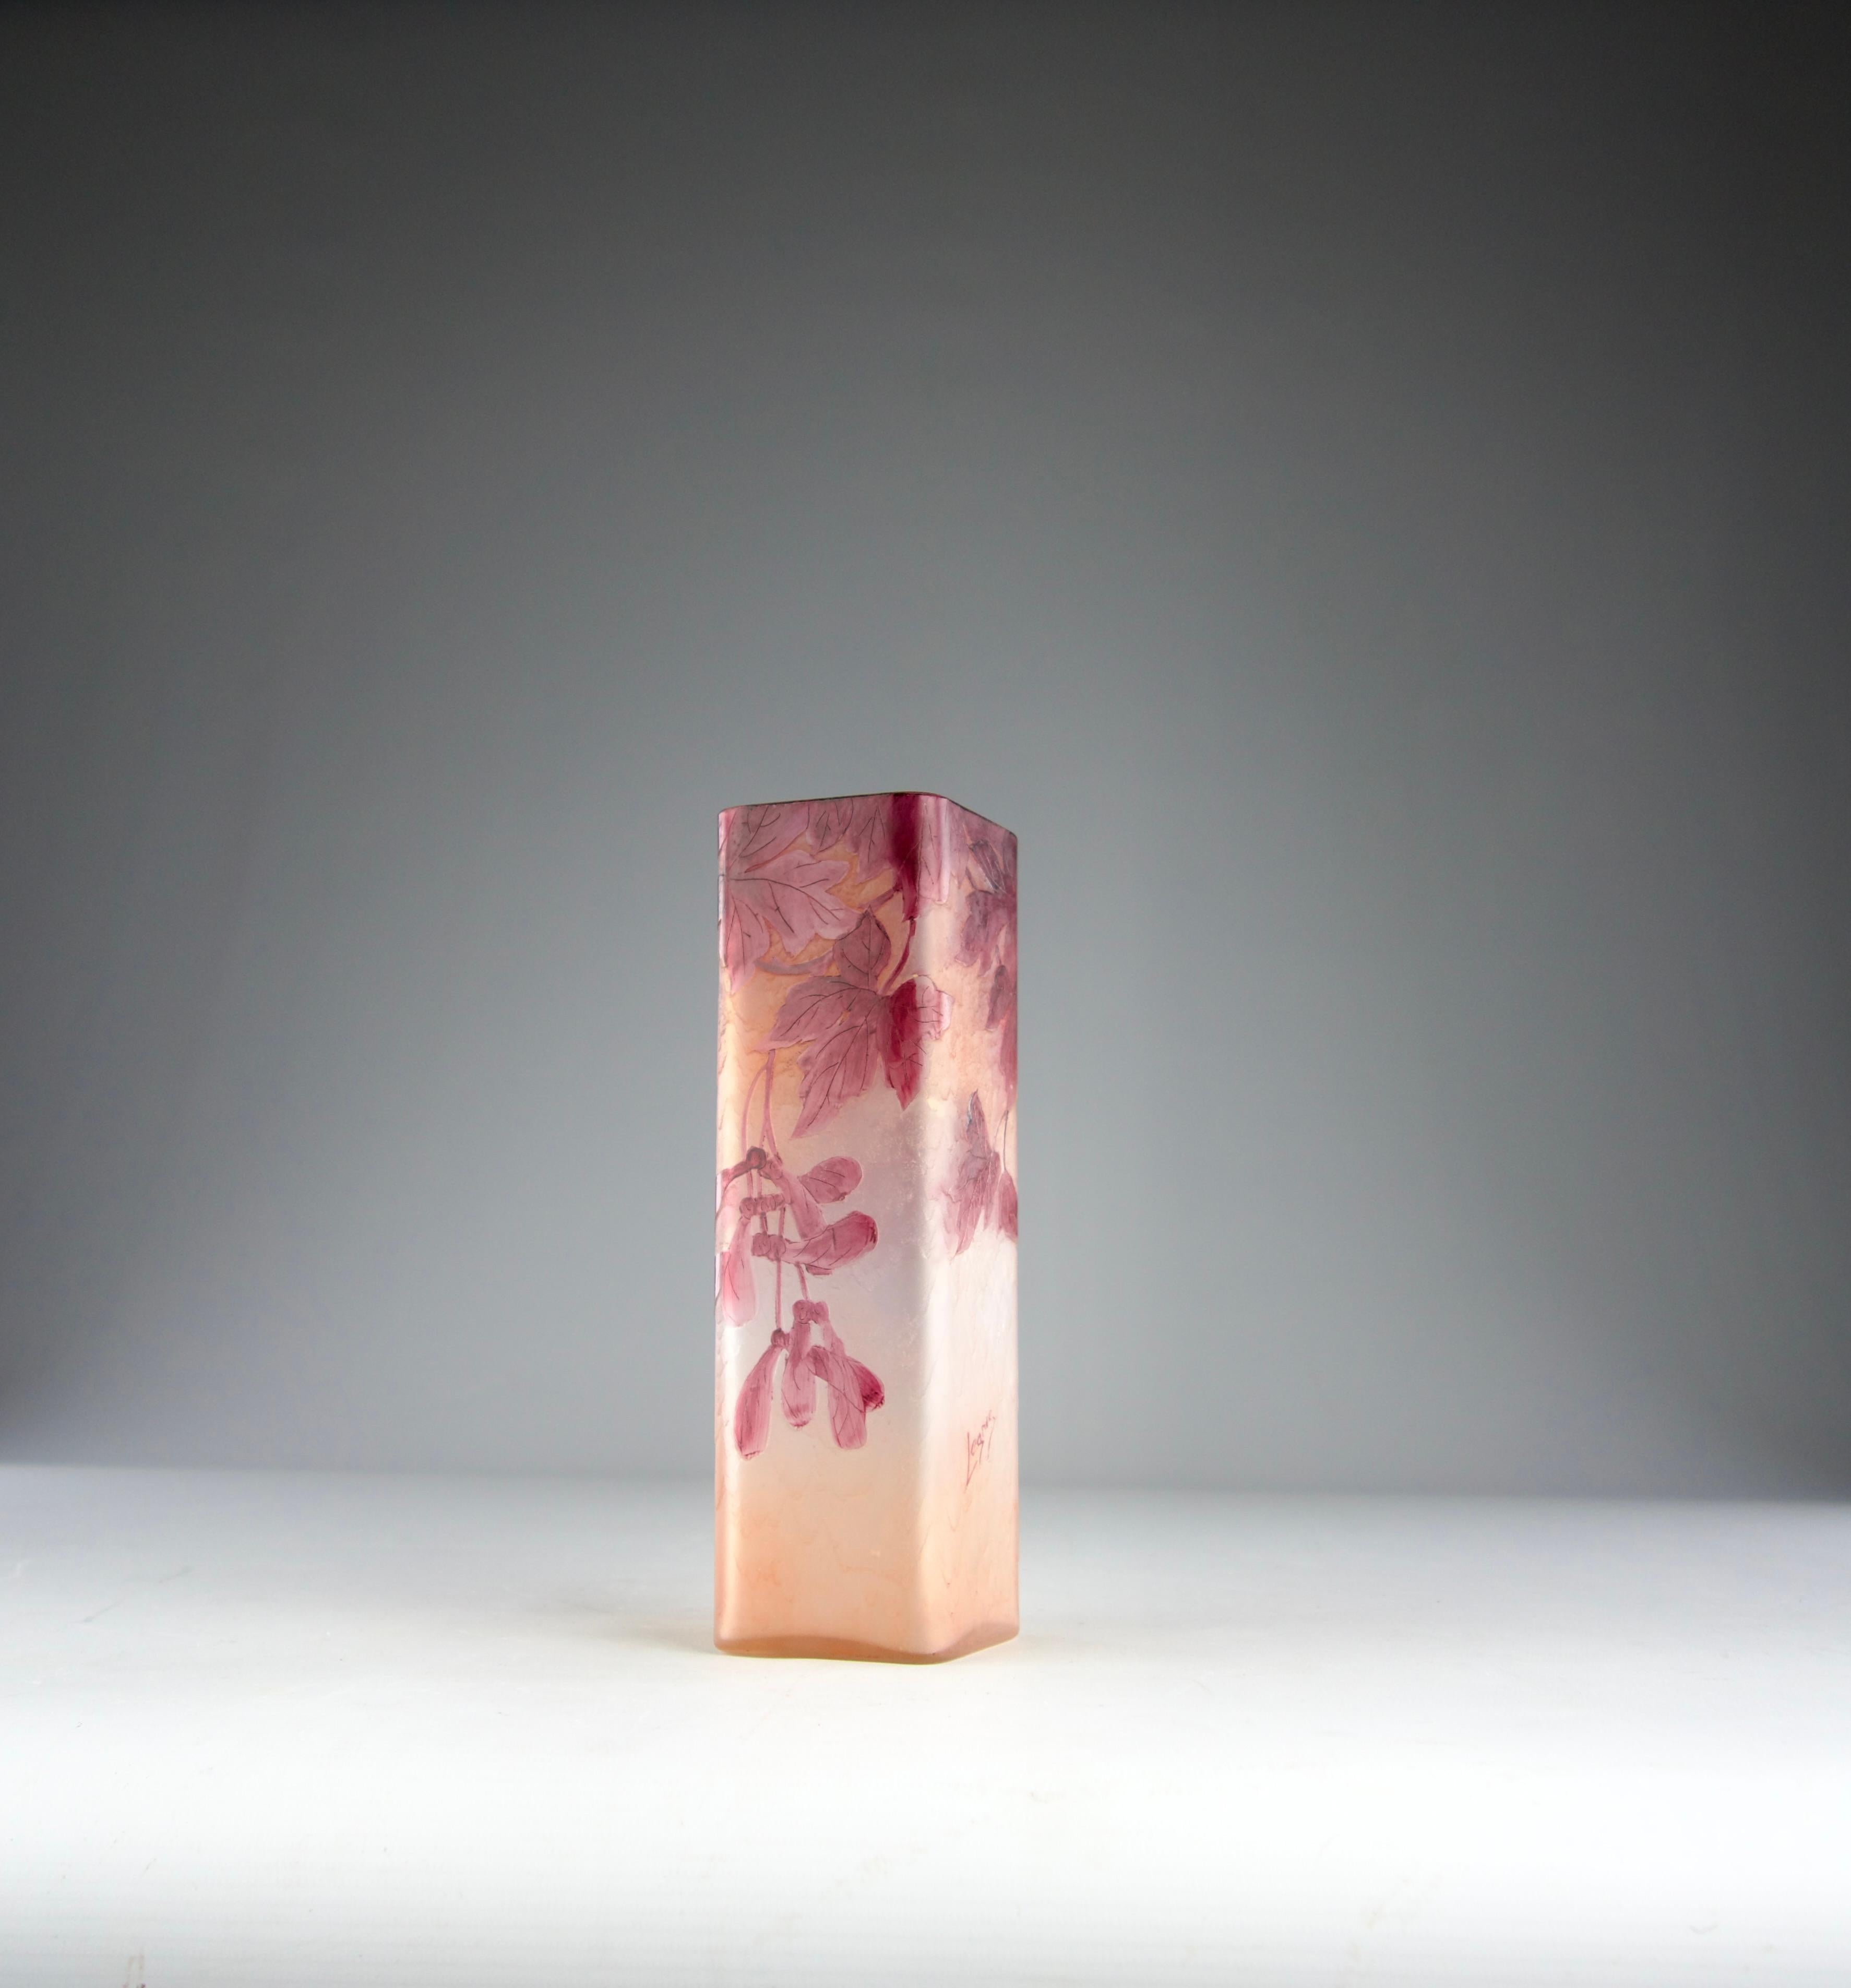 Precioso jarrón rosa y blanco grabado al ácido con adornos de hojas de arce y semillas de samara, de la Manufactura francesa Art Nouveau Legras de 1900. Firmado en el jarrón.

Muy buen estado.

Dimensiones en cm ( Al x L x l ) 21,8 x 6,7 x